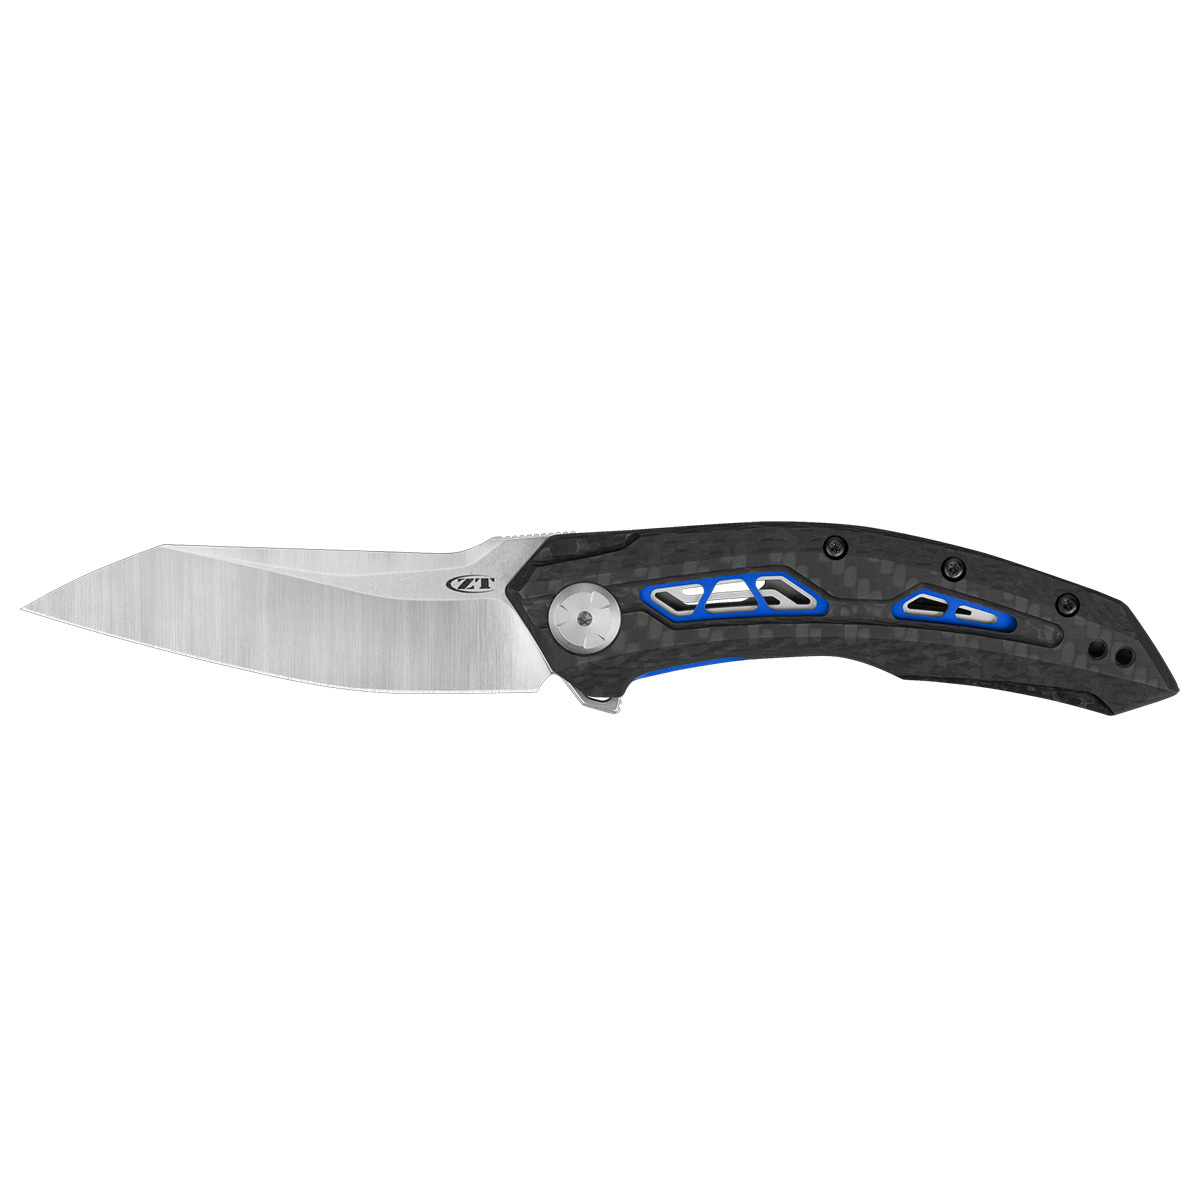 Складной нож Zero Tolerance 0762, сталь CPM-20CV, рукоять карбон складной нож we knife press check cpm 20cv